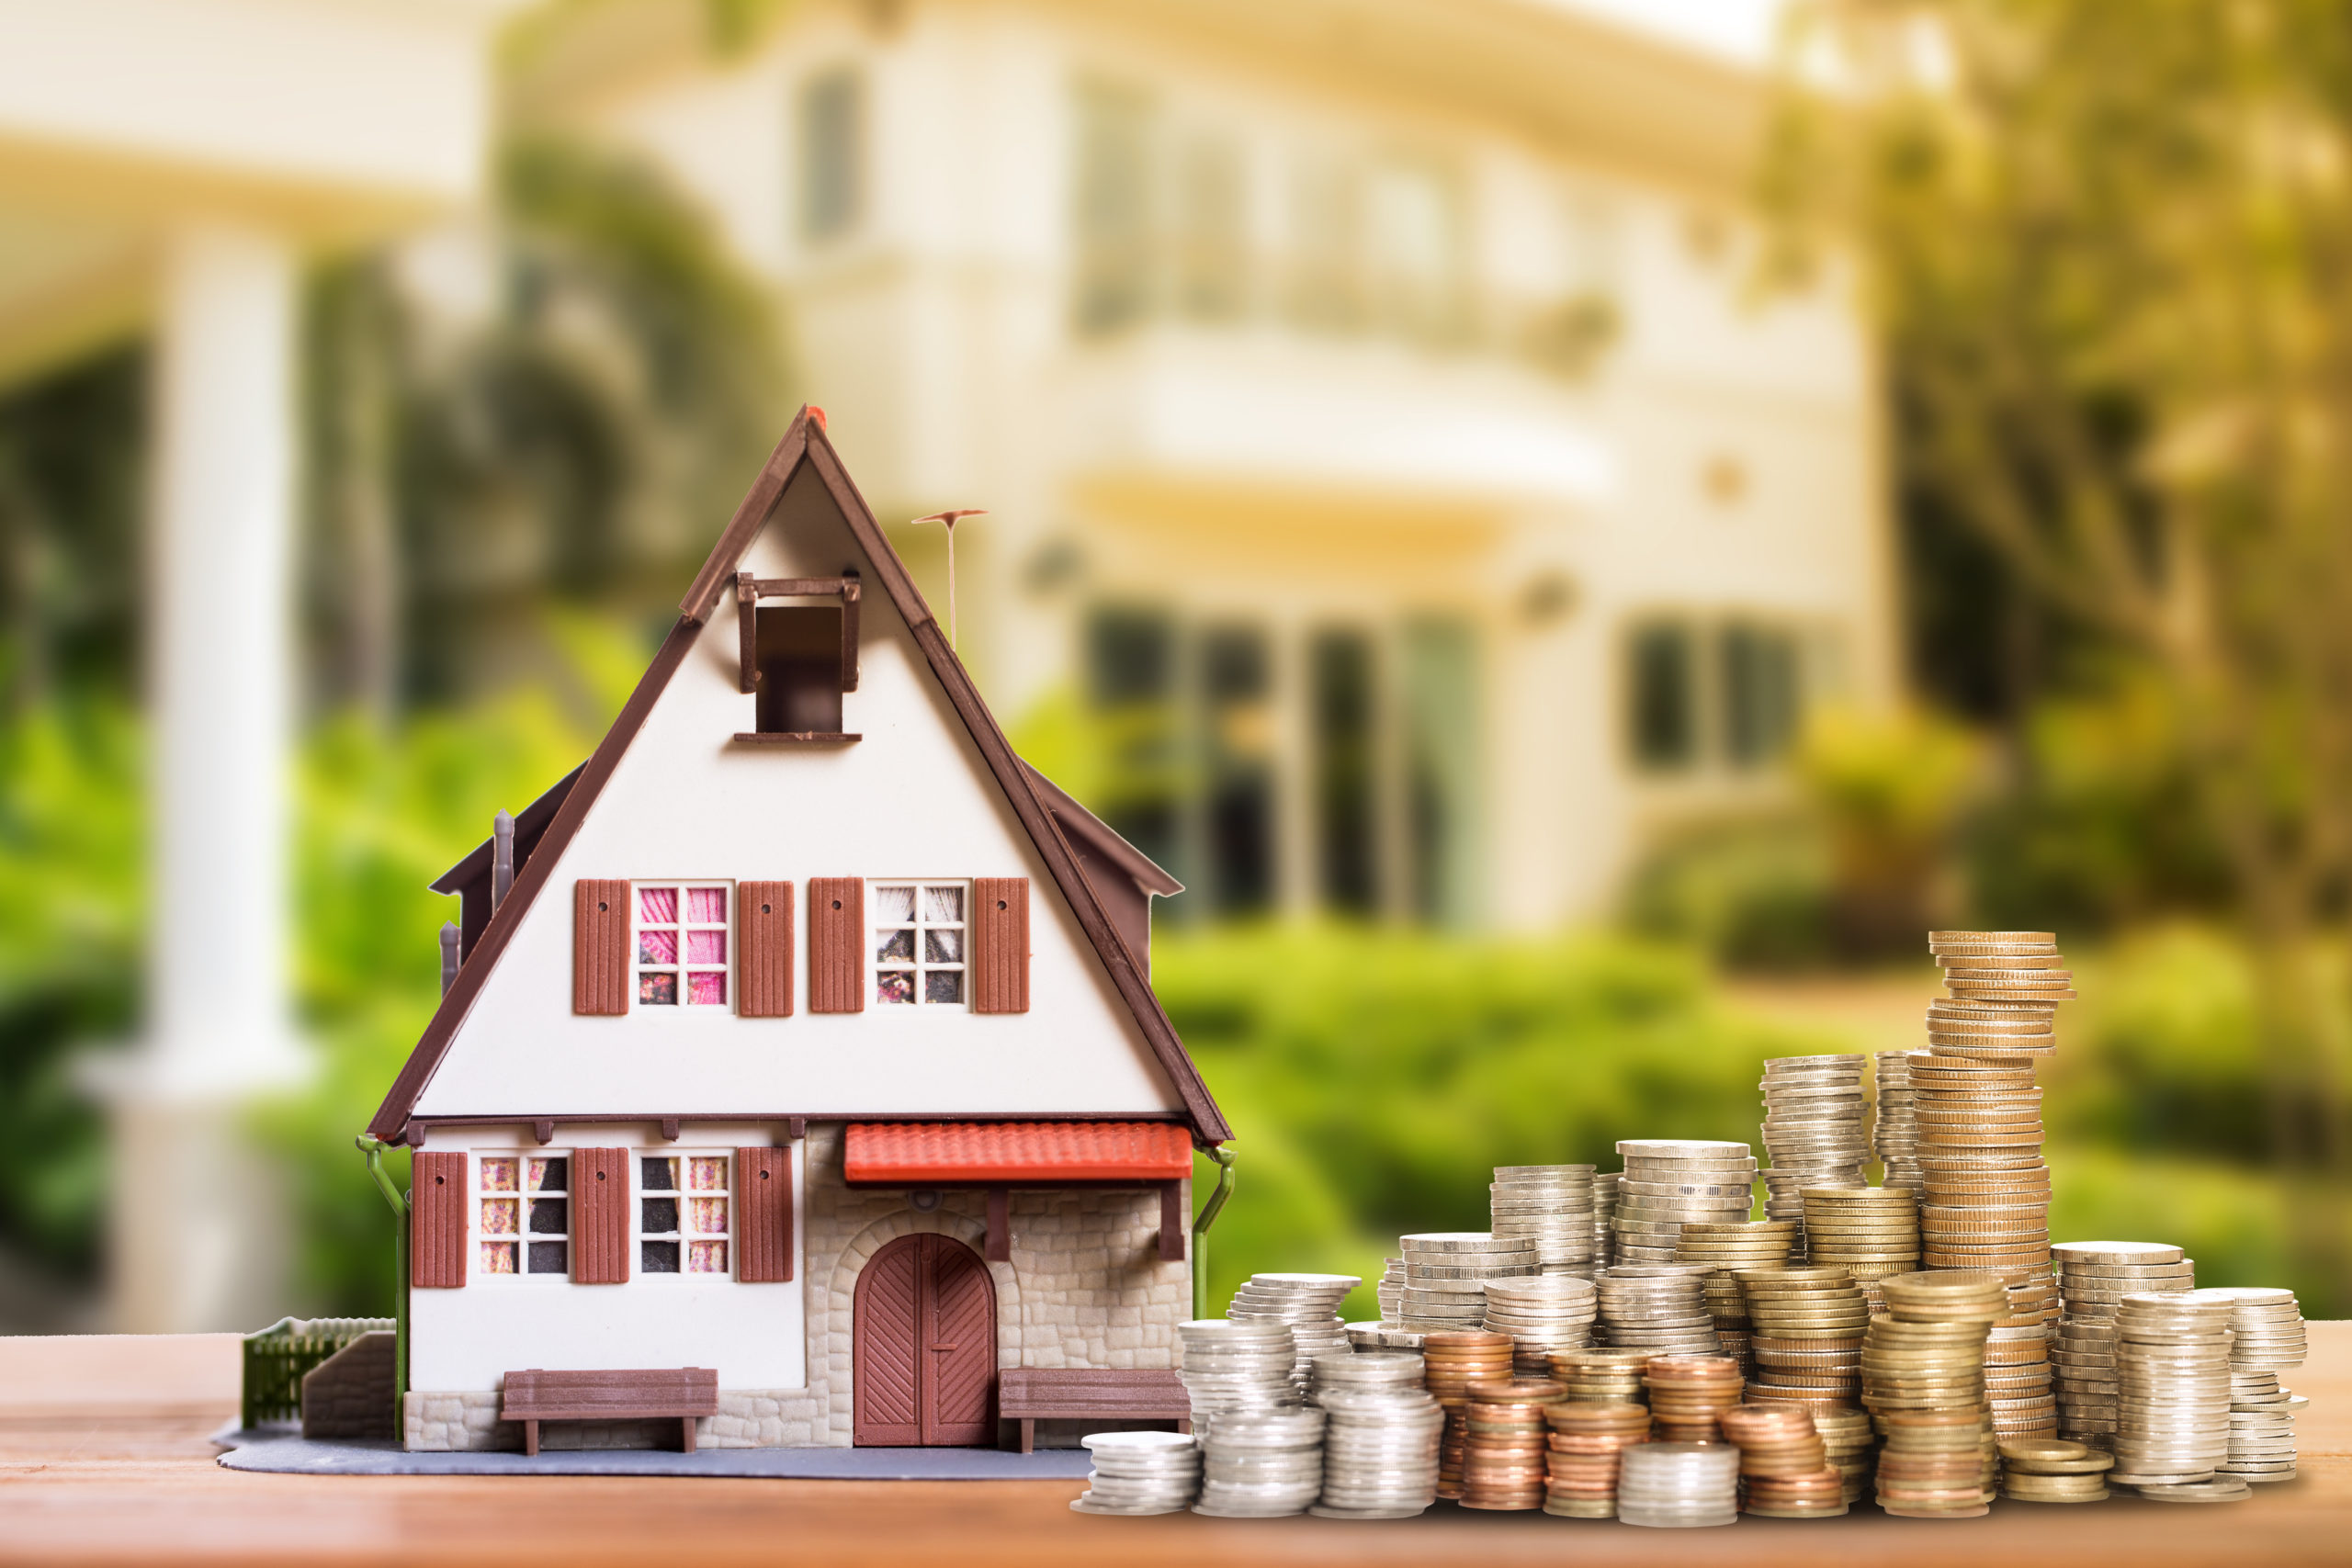 Инвестирование в недвижимость: за и против денег под залог доли в квартире